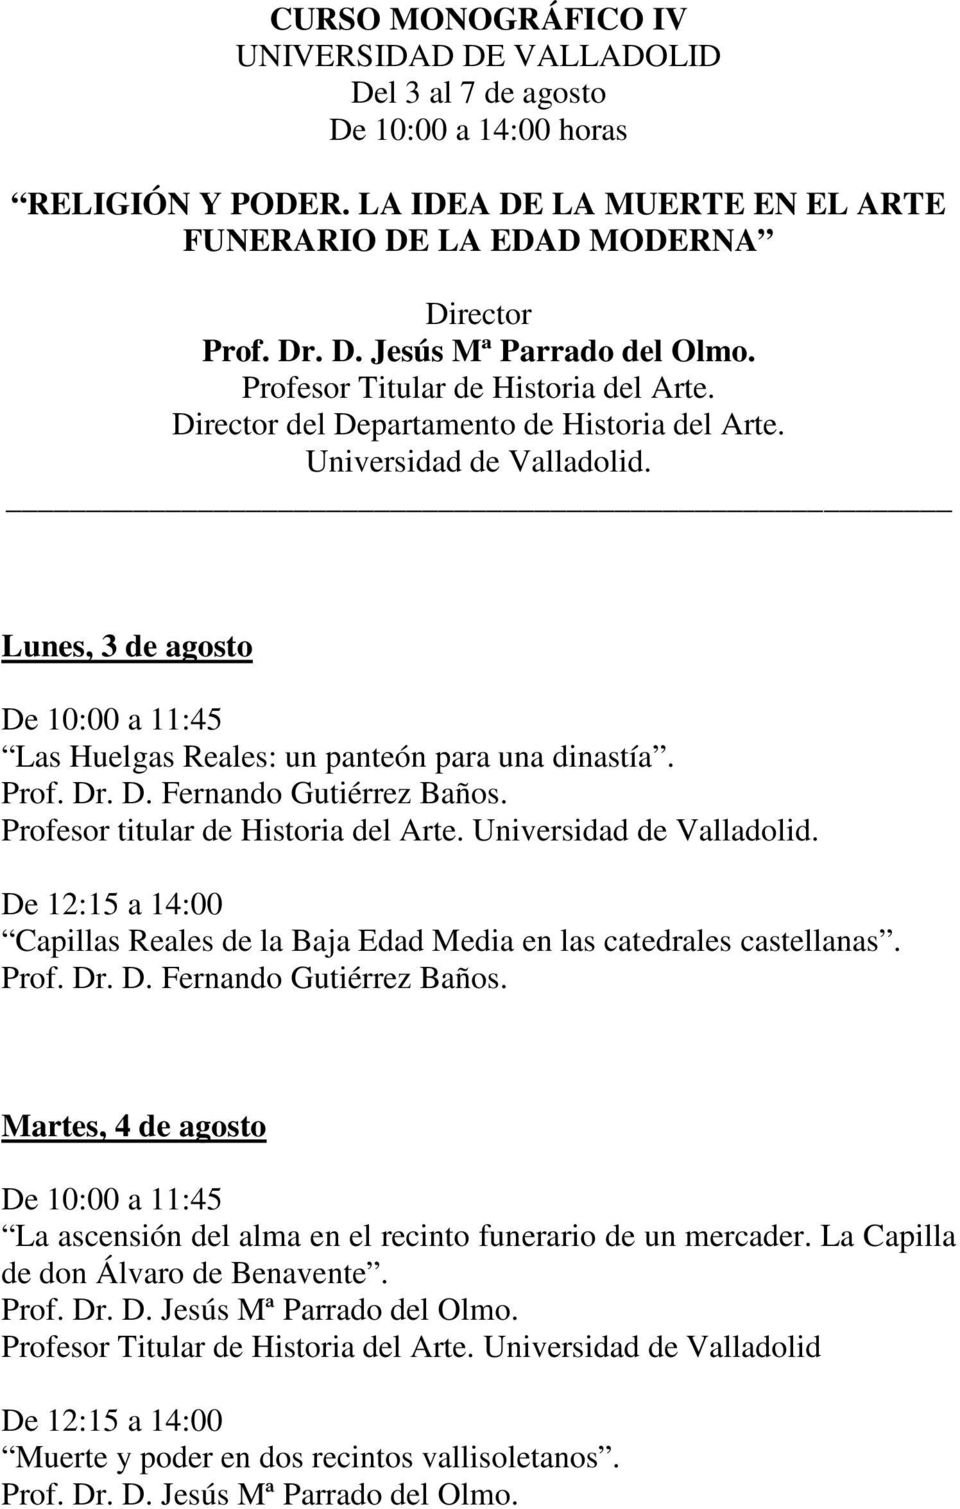 Profesor titular de Historia del Arte. Universidad de Valladolid. Capillas Reales de la Baja Edad Media en las catedrales castellanas. Prof. Dr. D. Fernando Gutiérrez Baños.